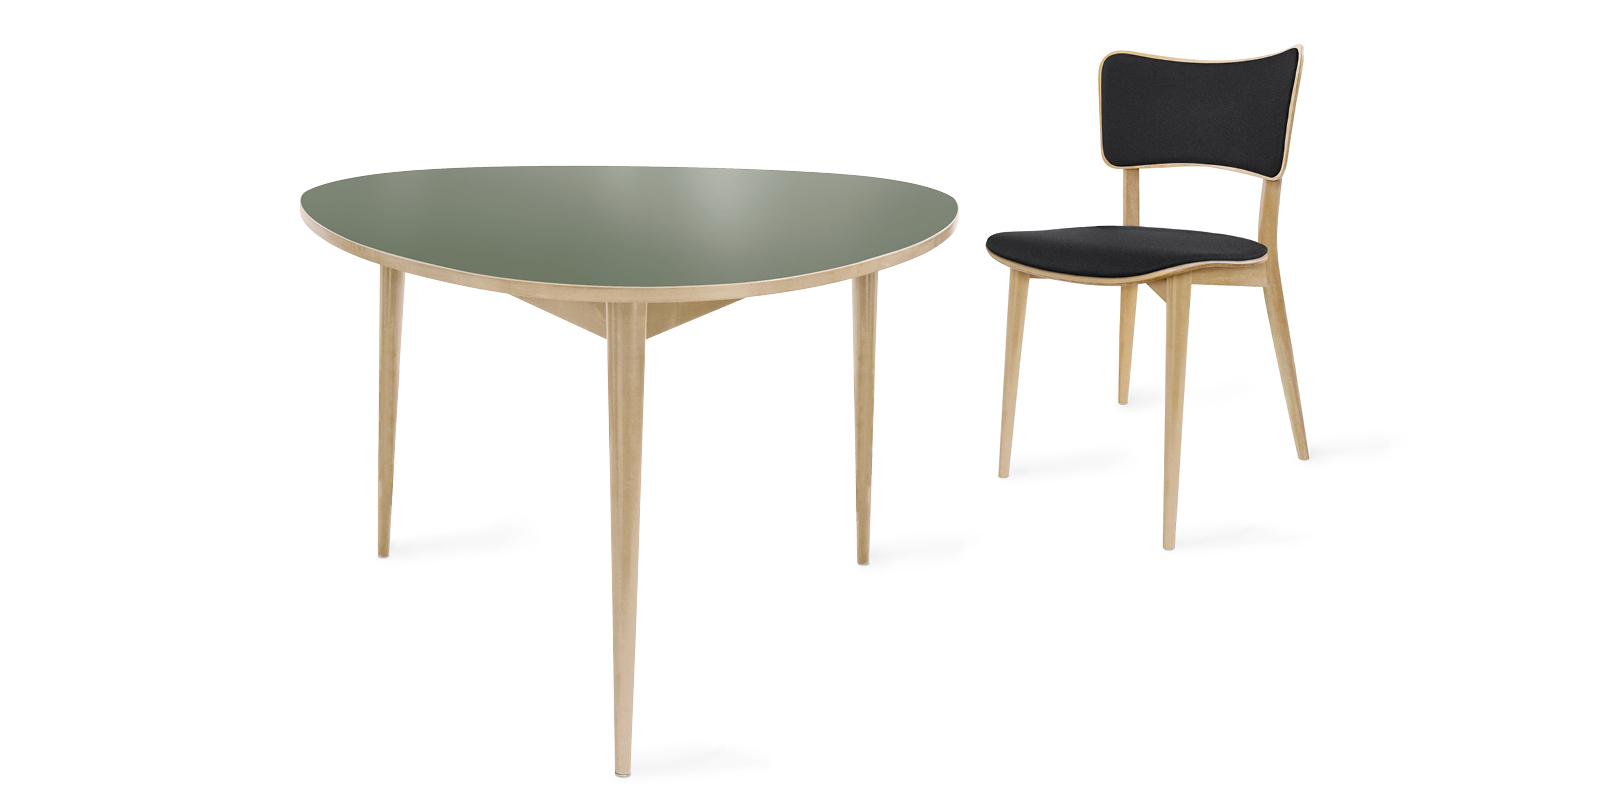 Dreirund-Tisch und Kreuzzargen-Stuhl von Max Bill vor weissem Hintergrund